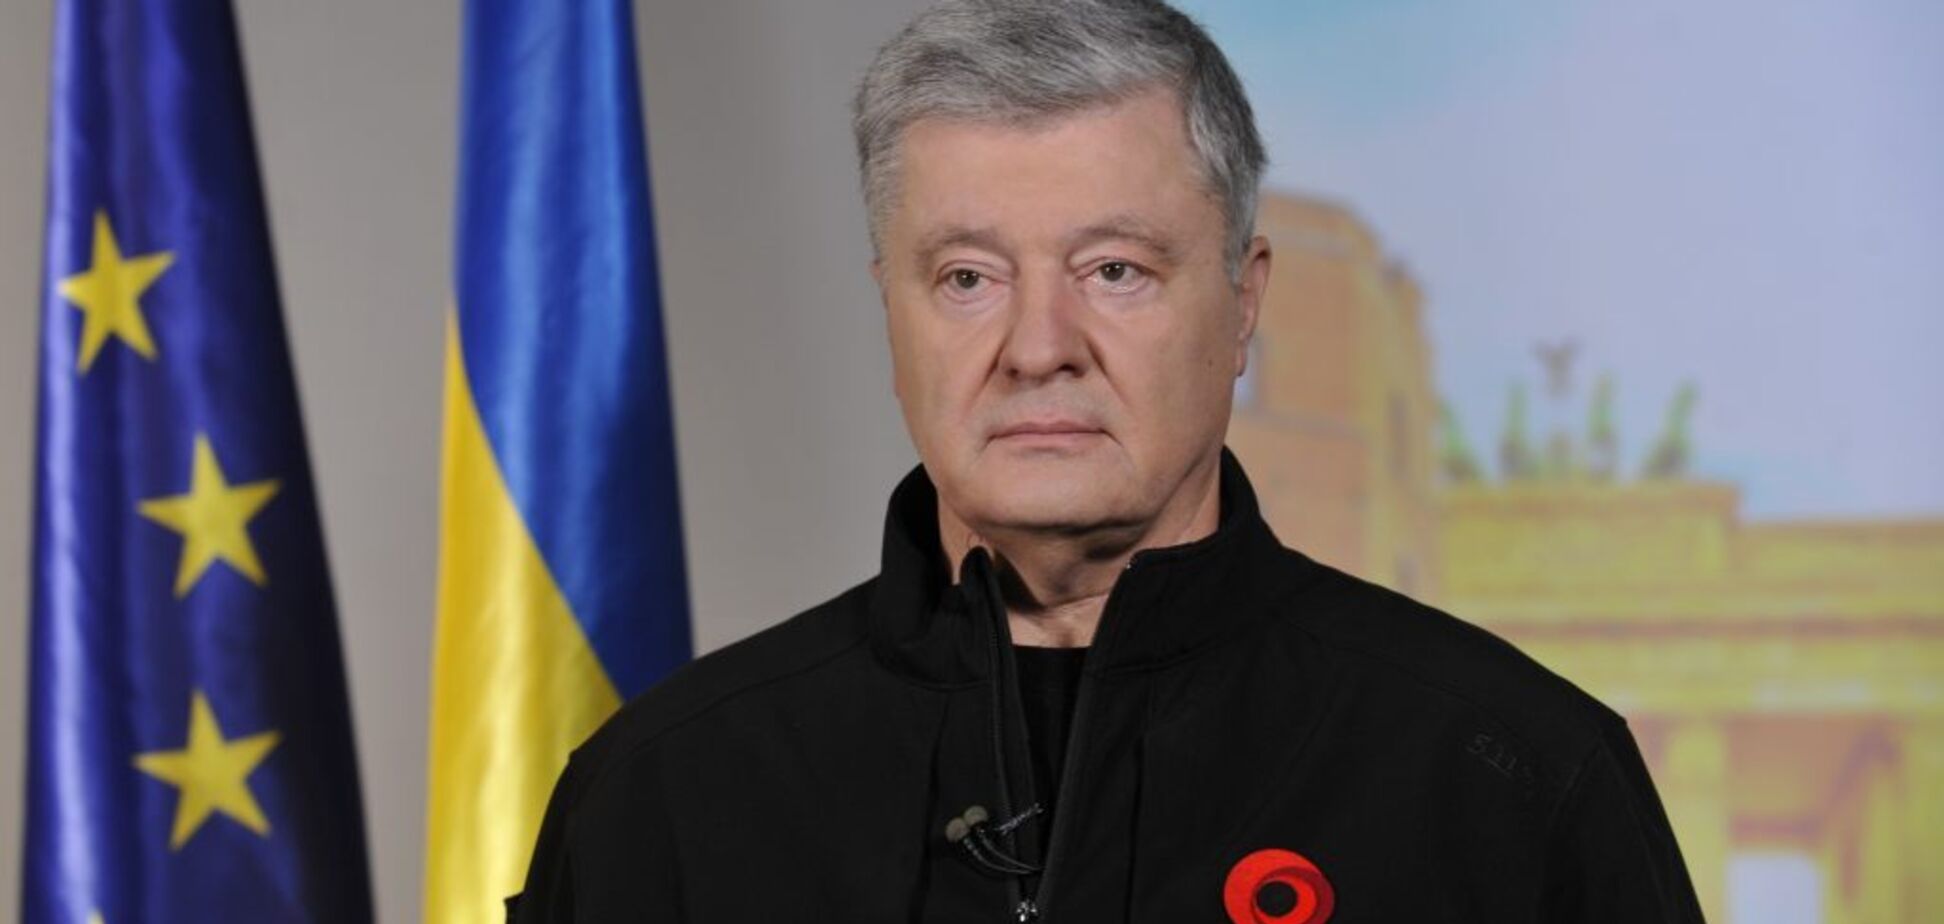 Украина должна стать членом ЕС и НАТО, а Россию нужно депутинизировать, – Порошенко